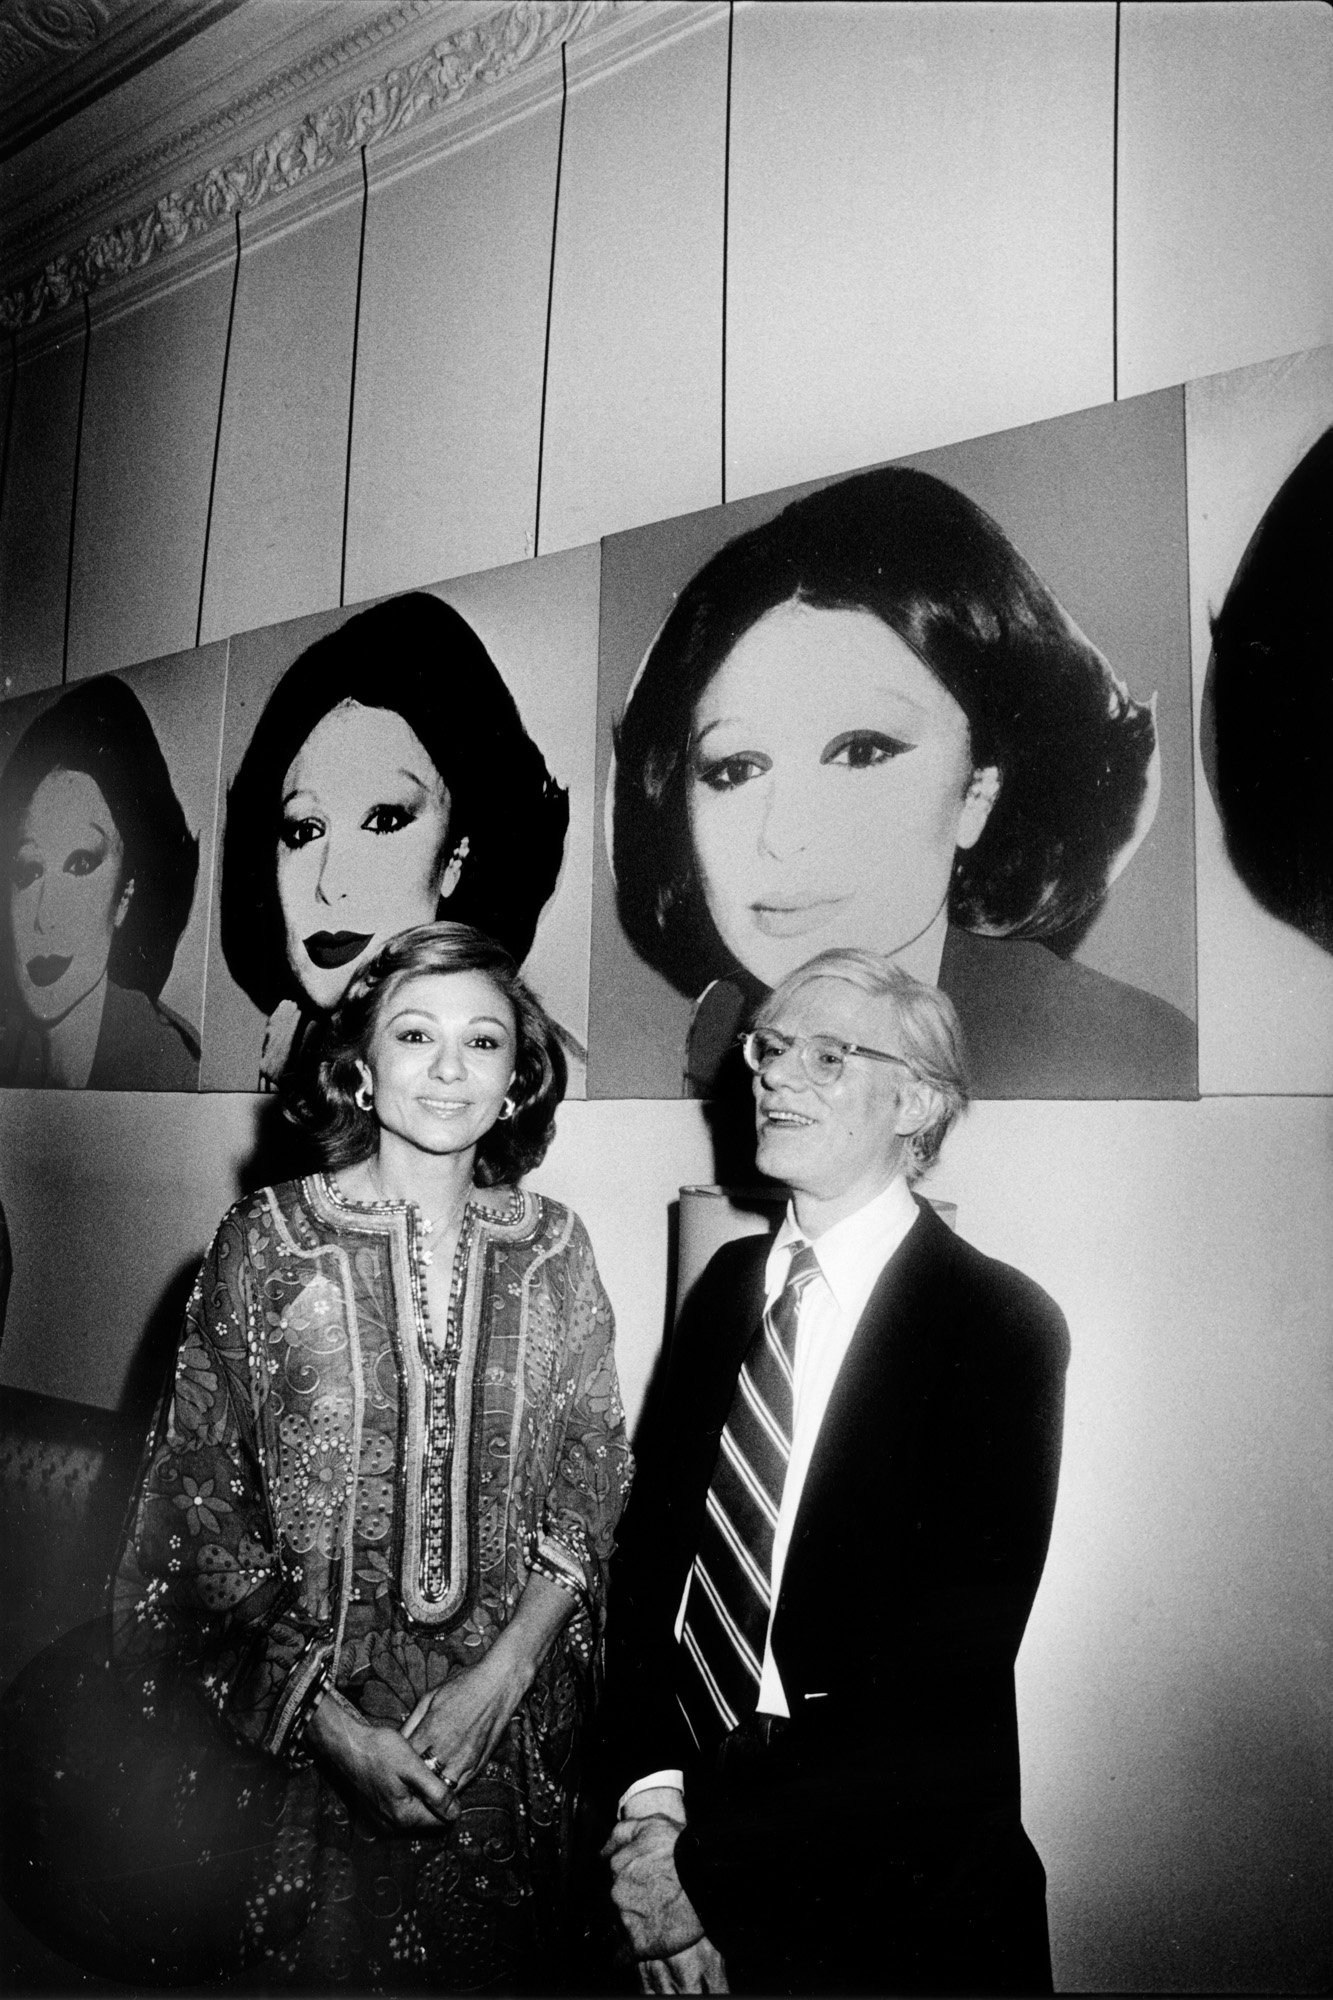 安迪．沃荷 (Andy Warhol) 在伊朗皇后法拉赫．巴列維 (Farah Pahlavi) 倍同下，參觀安迪．沃荷在華爾道夫－阿斯托里亞地下秘密火車軌道上的作品展覽 - 1965 年